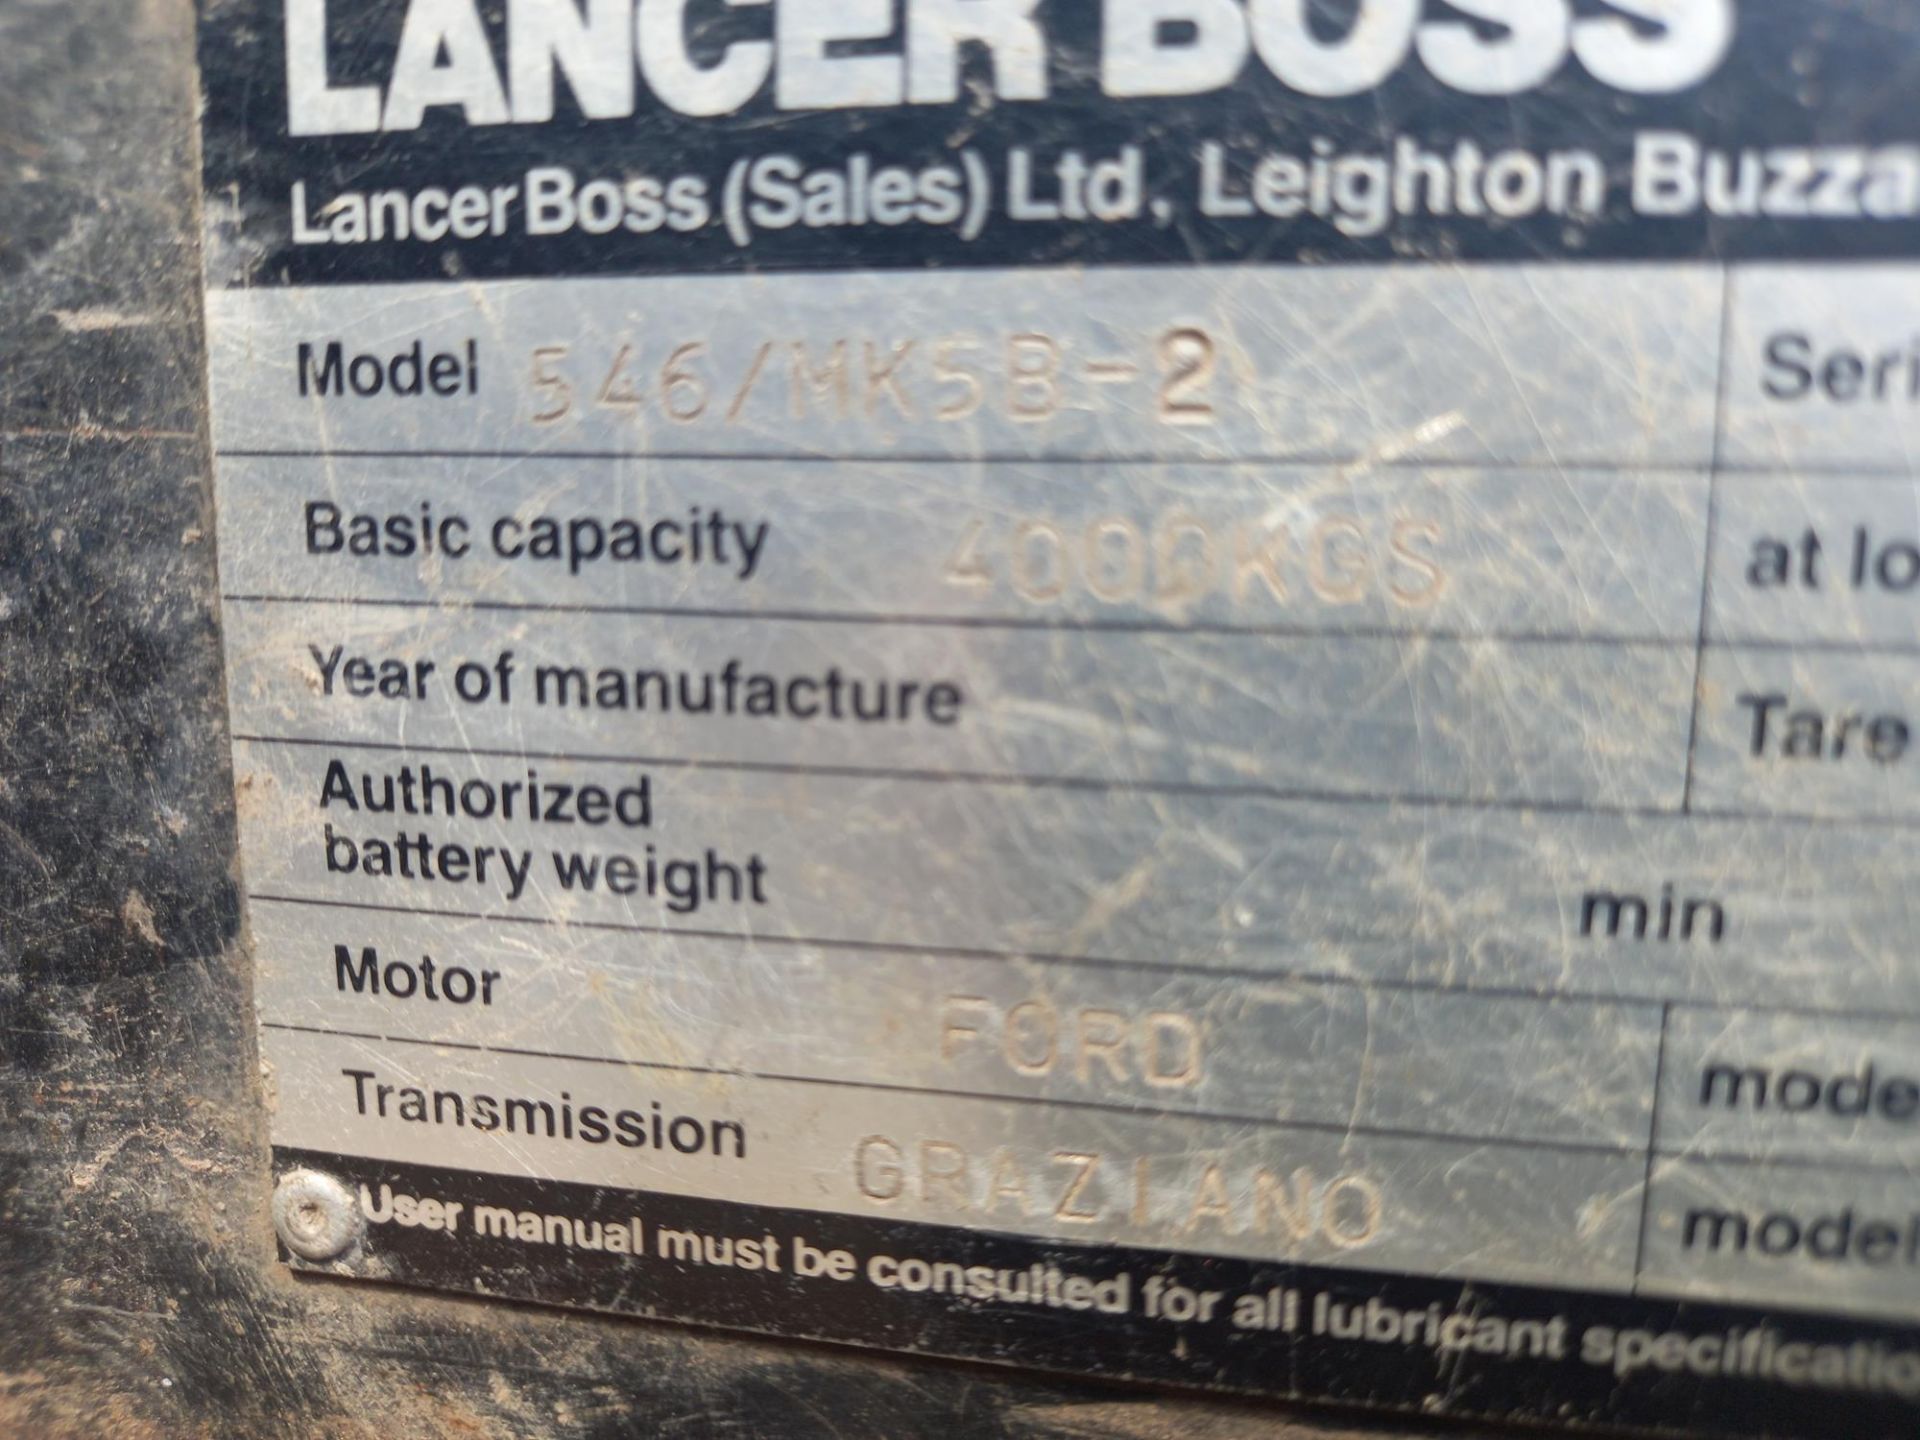 Lancer Boss model 546/MK5B-2 side loader - Image 5 of 10